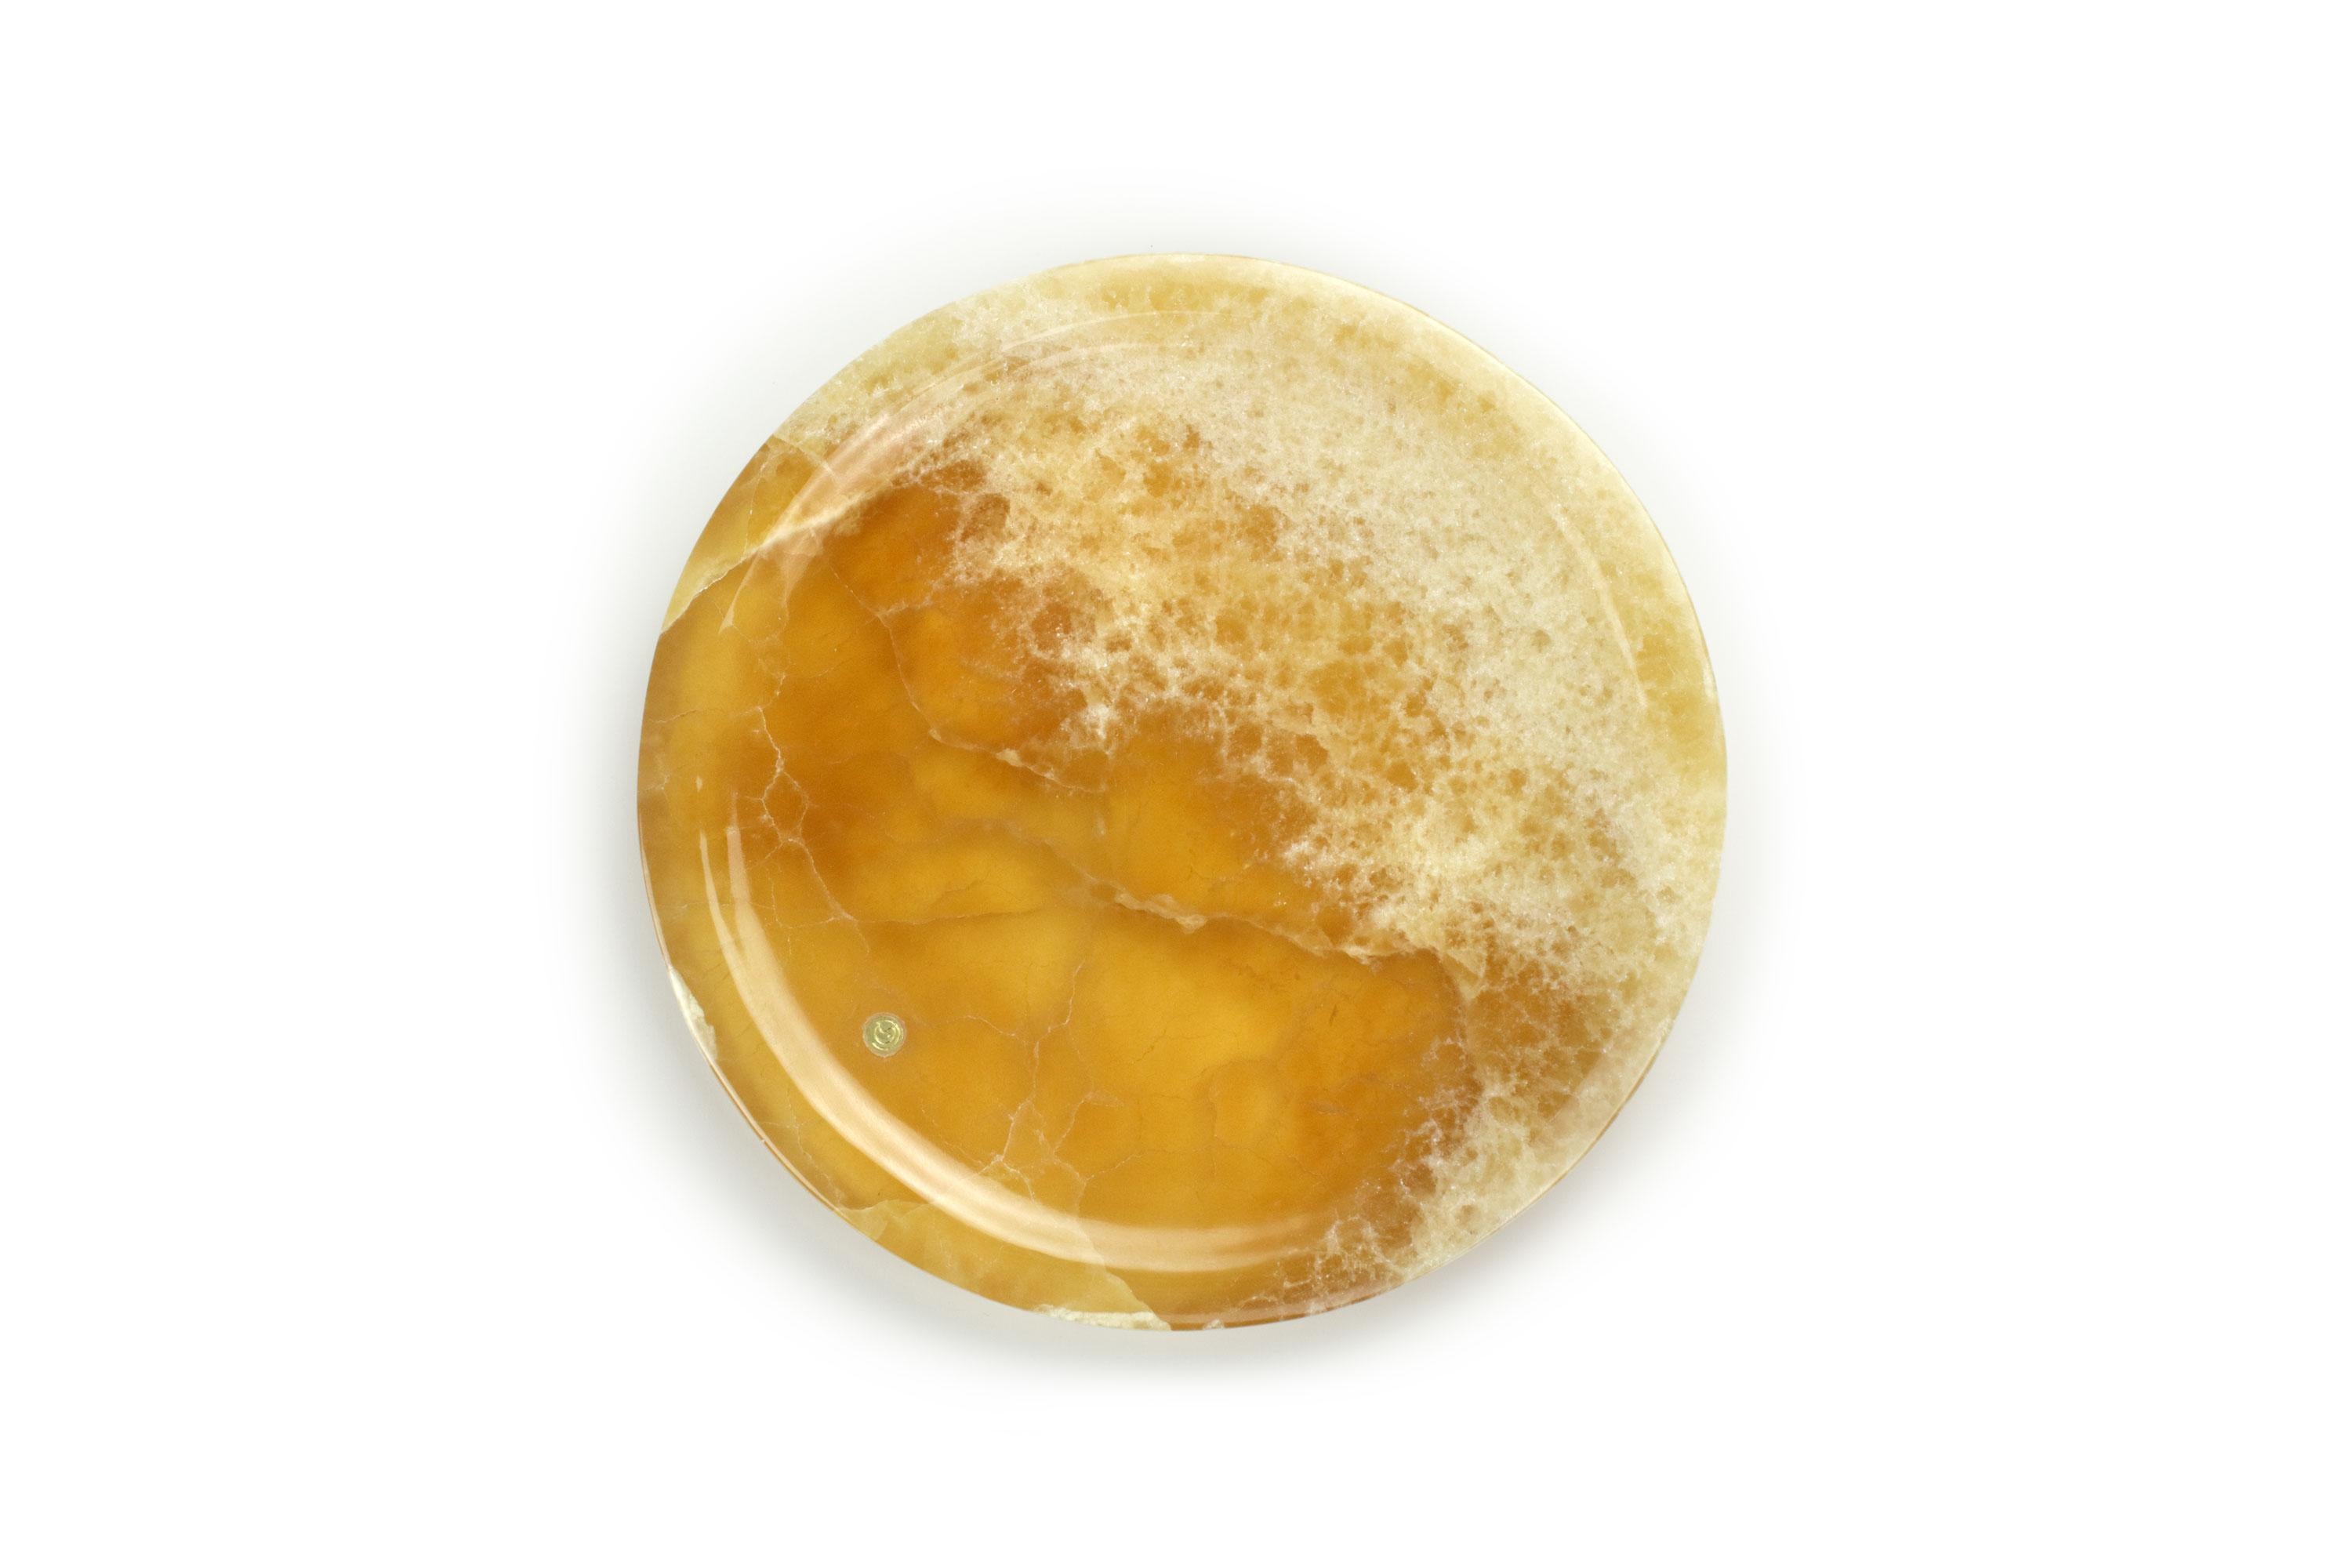 Assiette de présentation circulaire sculptée à la main en onyx ambré. La finition polie souligne la transparence de l'onyx, ce qui en fait un objet très précieux.
Utilisation multiple en tant qu'assiettes, plateaux et récipients. 

Dimensions : D 22